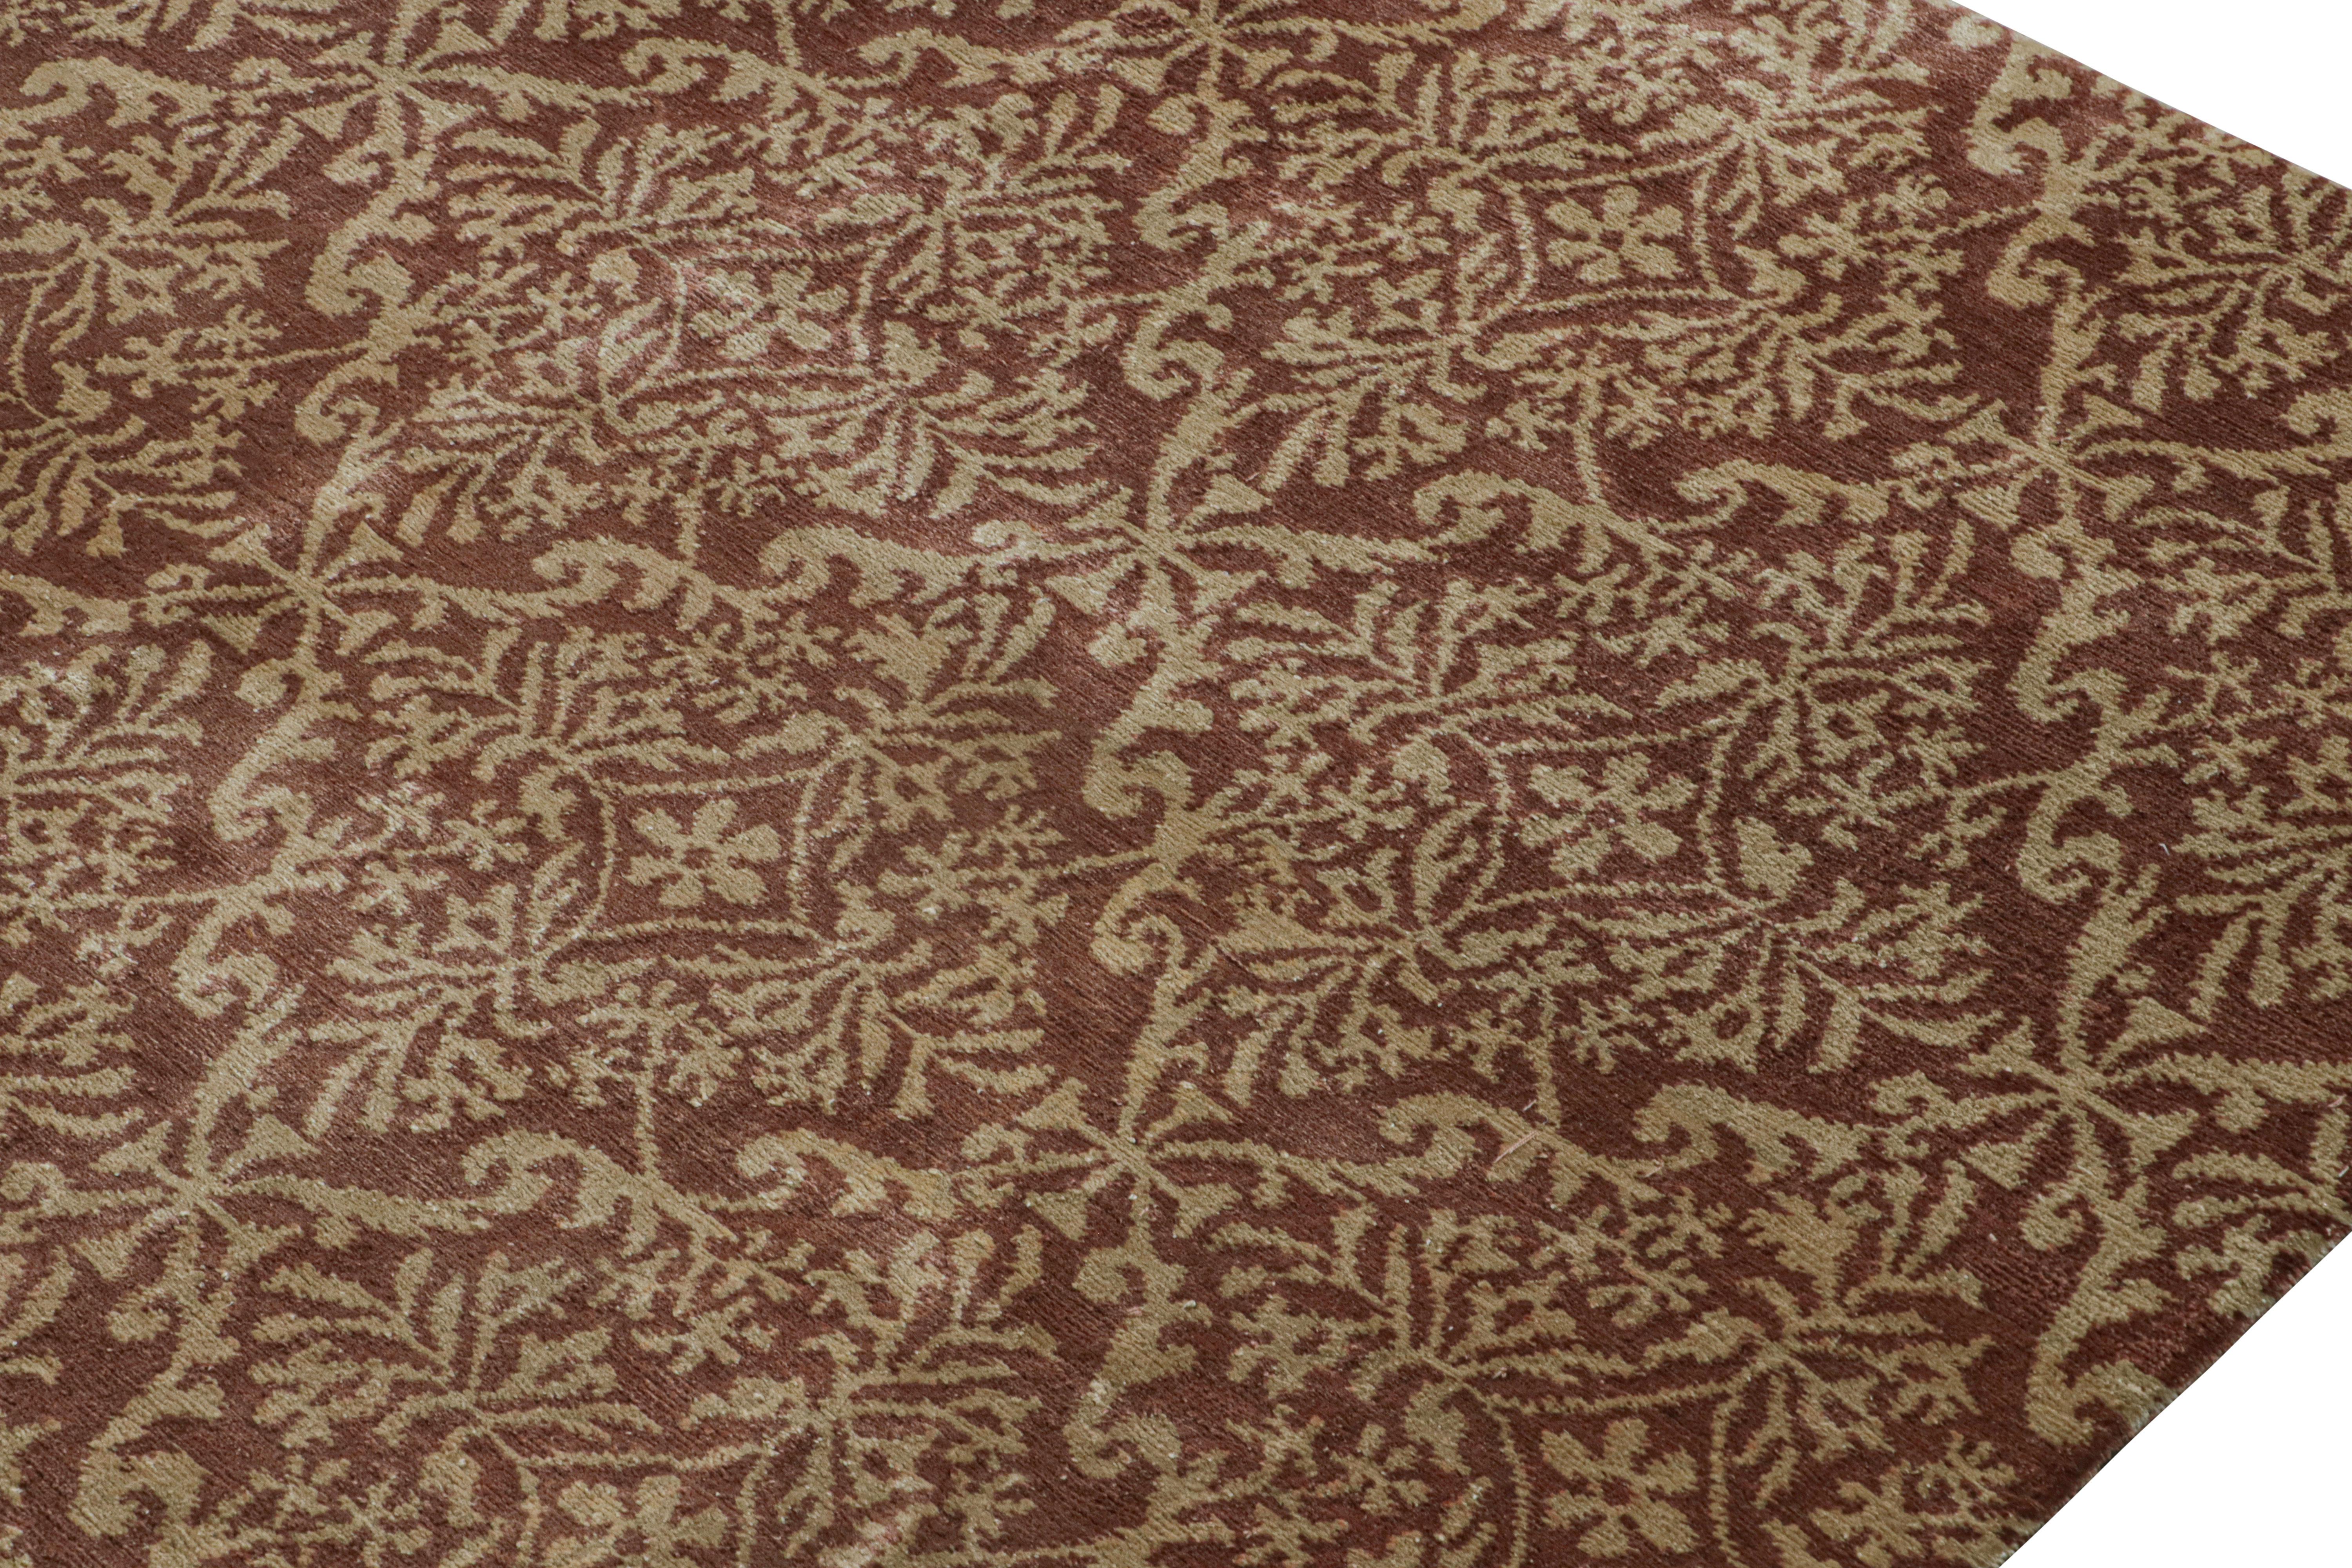 Rug & Kilim's Spanischer Teppich im europäischen Stil in Brown mit Blumenmuster Cordoba (Handgeknüpft) im Angebot